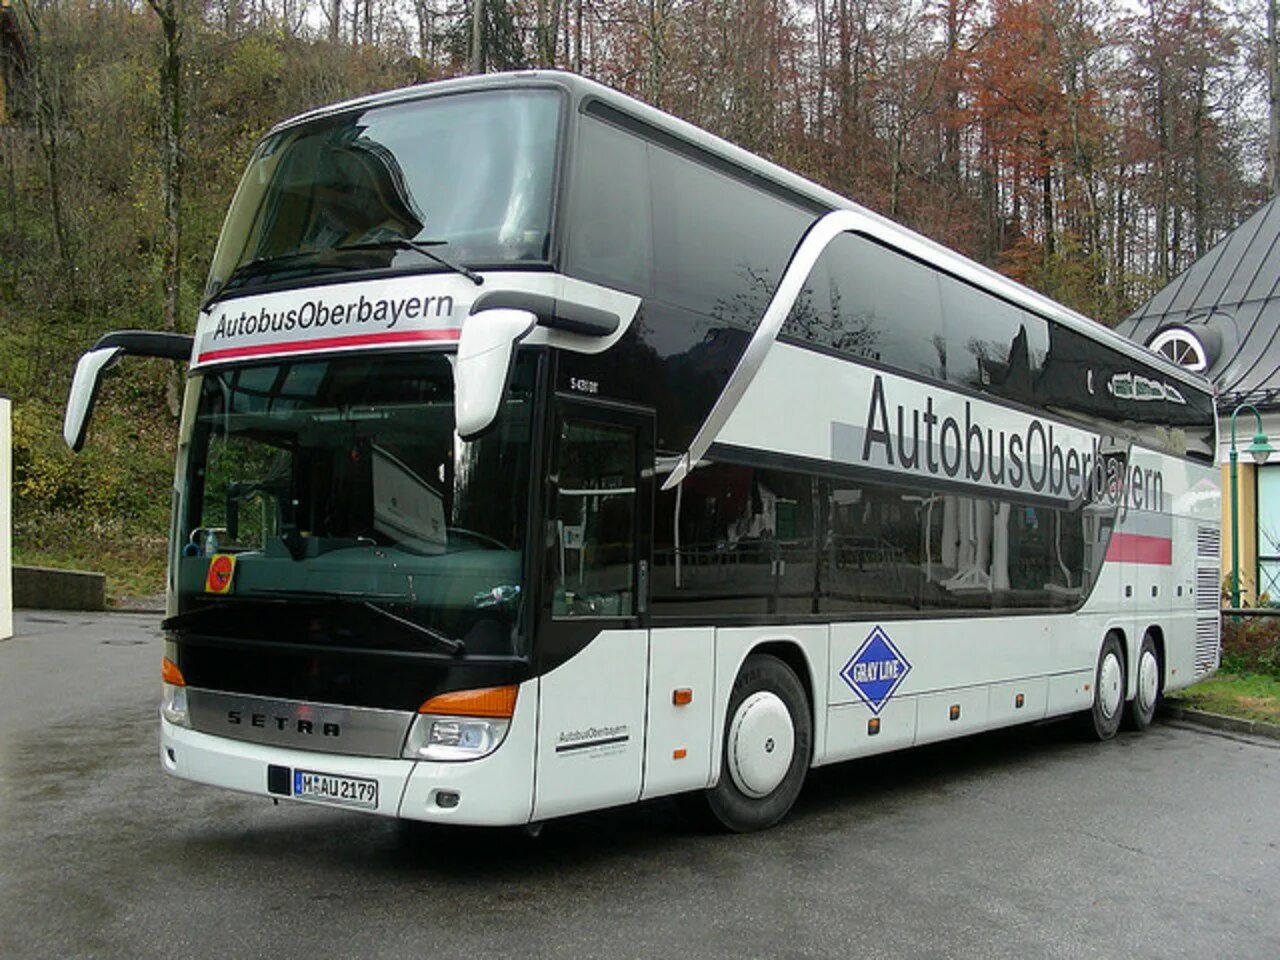 Продажа автобуса б у. Автобус экскурсионный Setra. Setra автобус двухэтажный. Man Neoplan Setra автобус. Автобус сетра 2022.